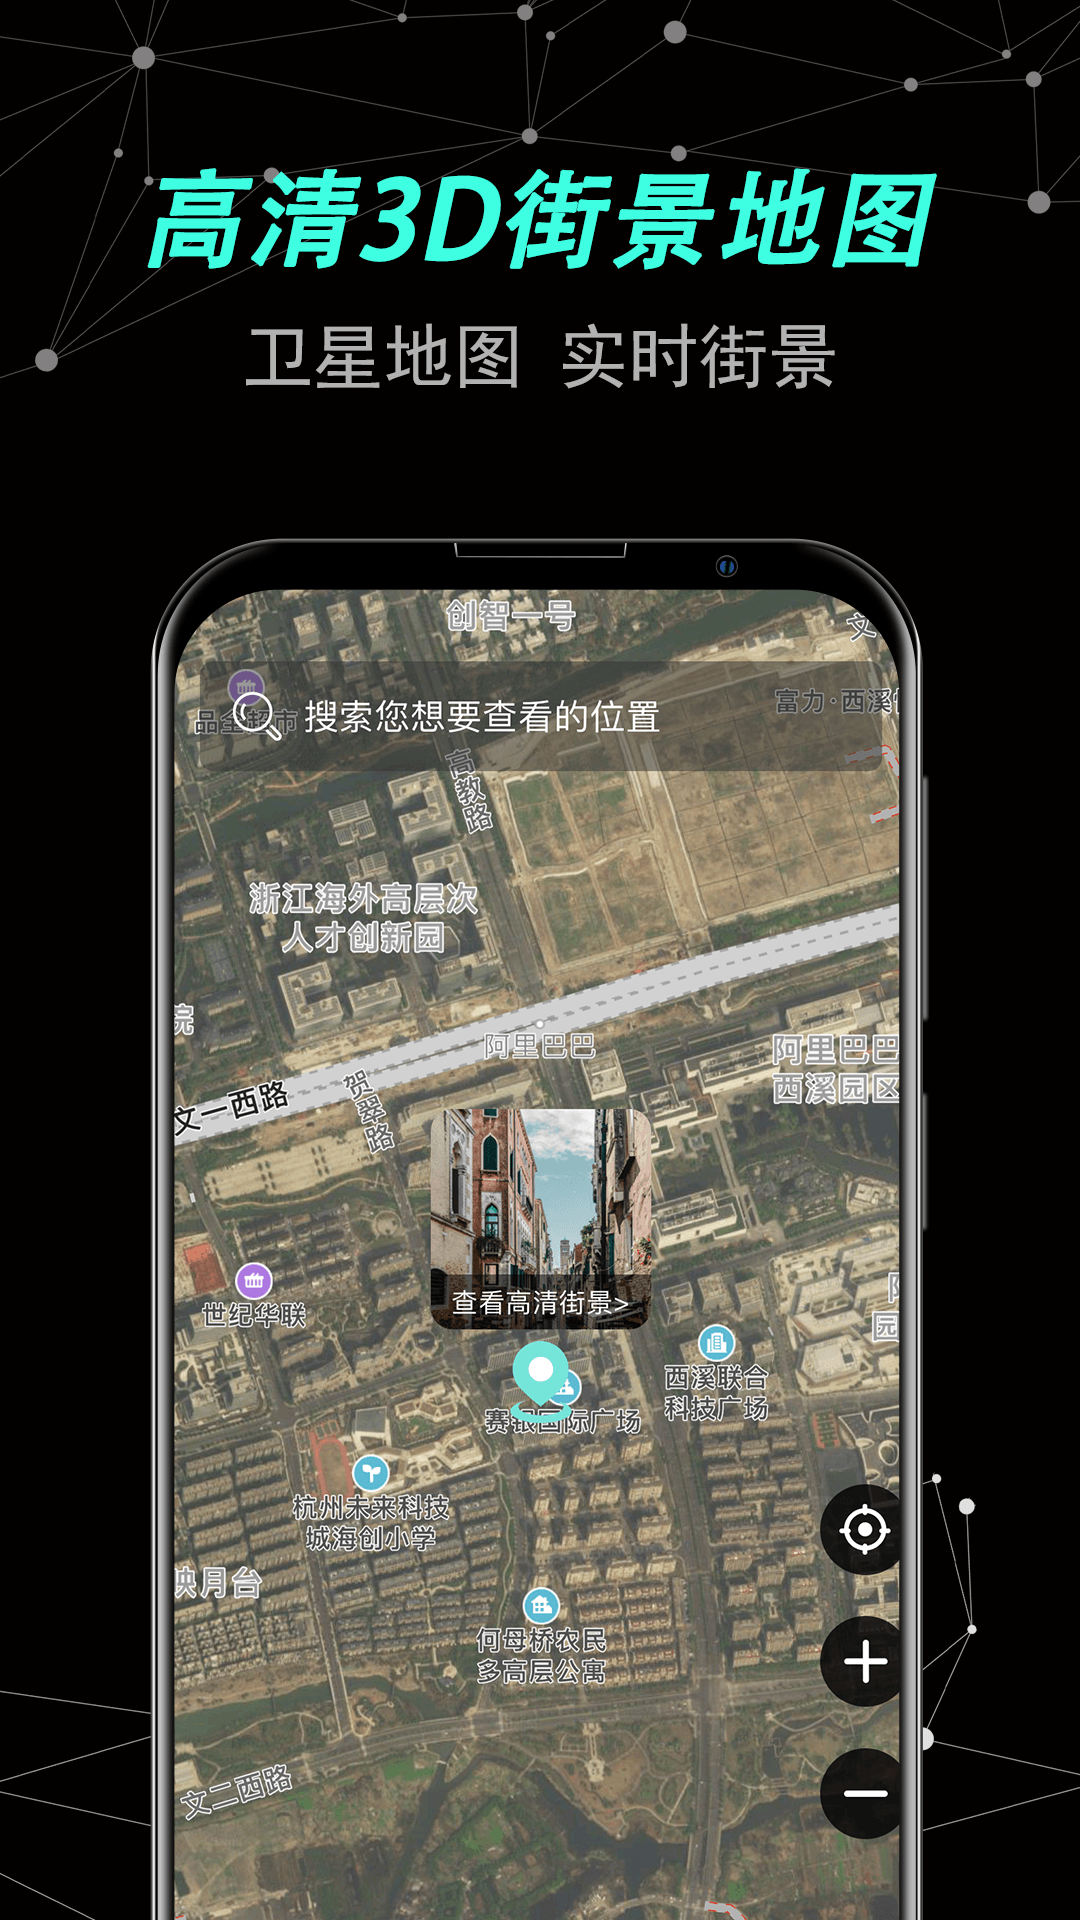 声趣世界街景卫星地图App软件下载安装图片1